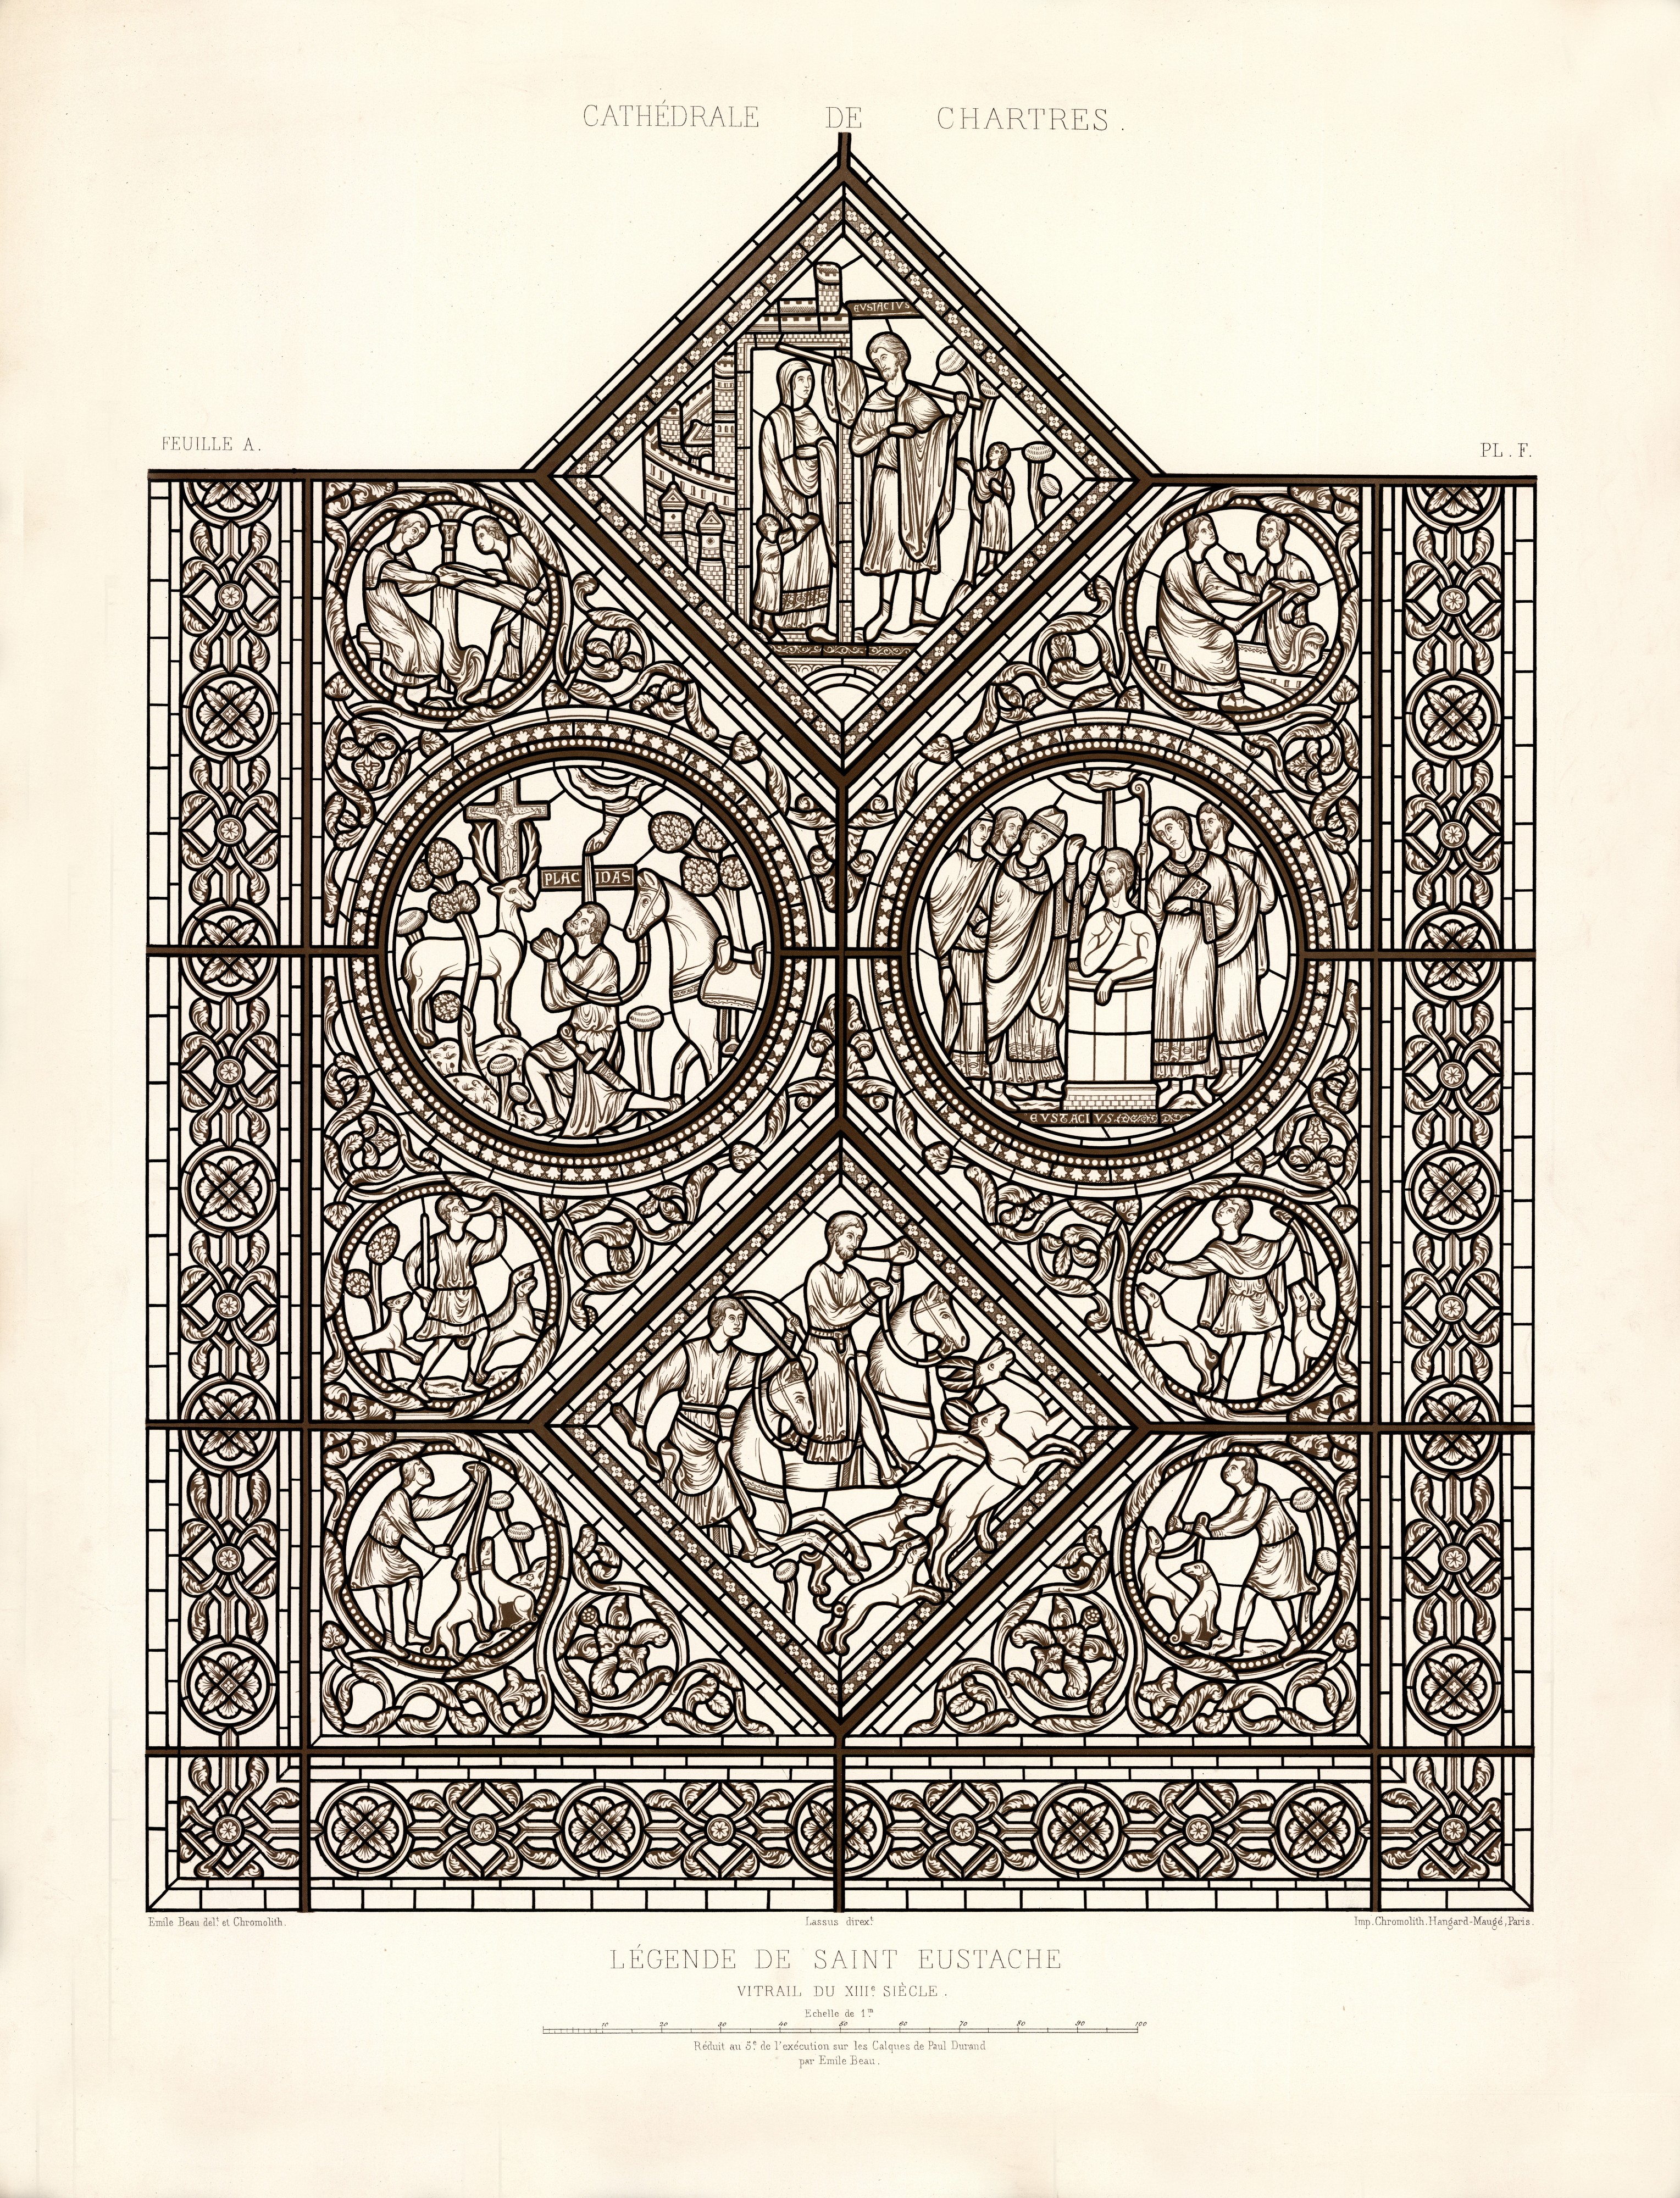 Monografie de la Cathedrale de Chartres - Atlas - Vitrail de saint Eustache - Feuille A - Lithographie